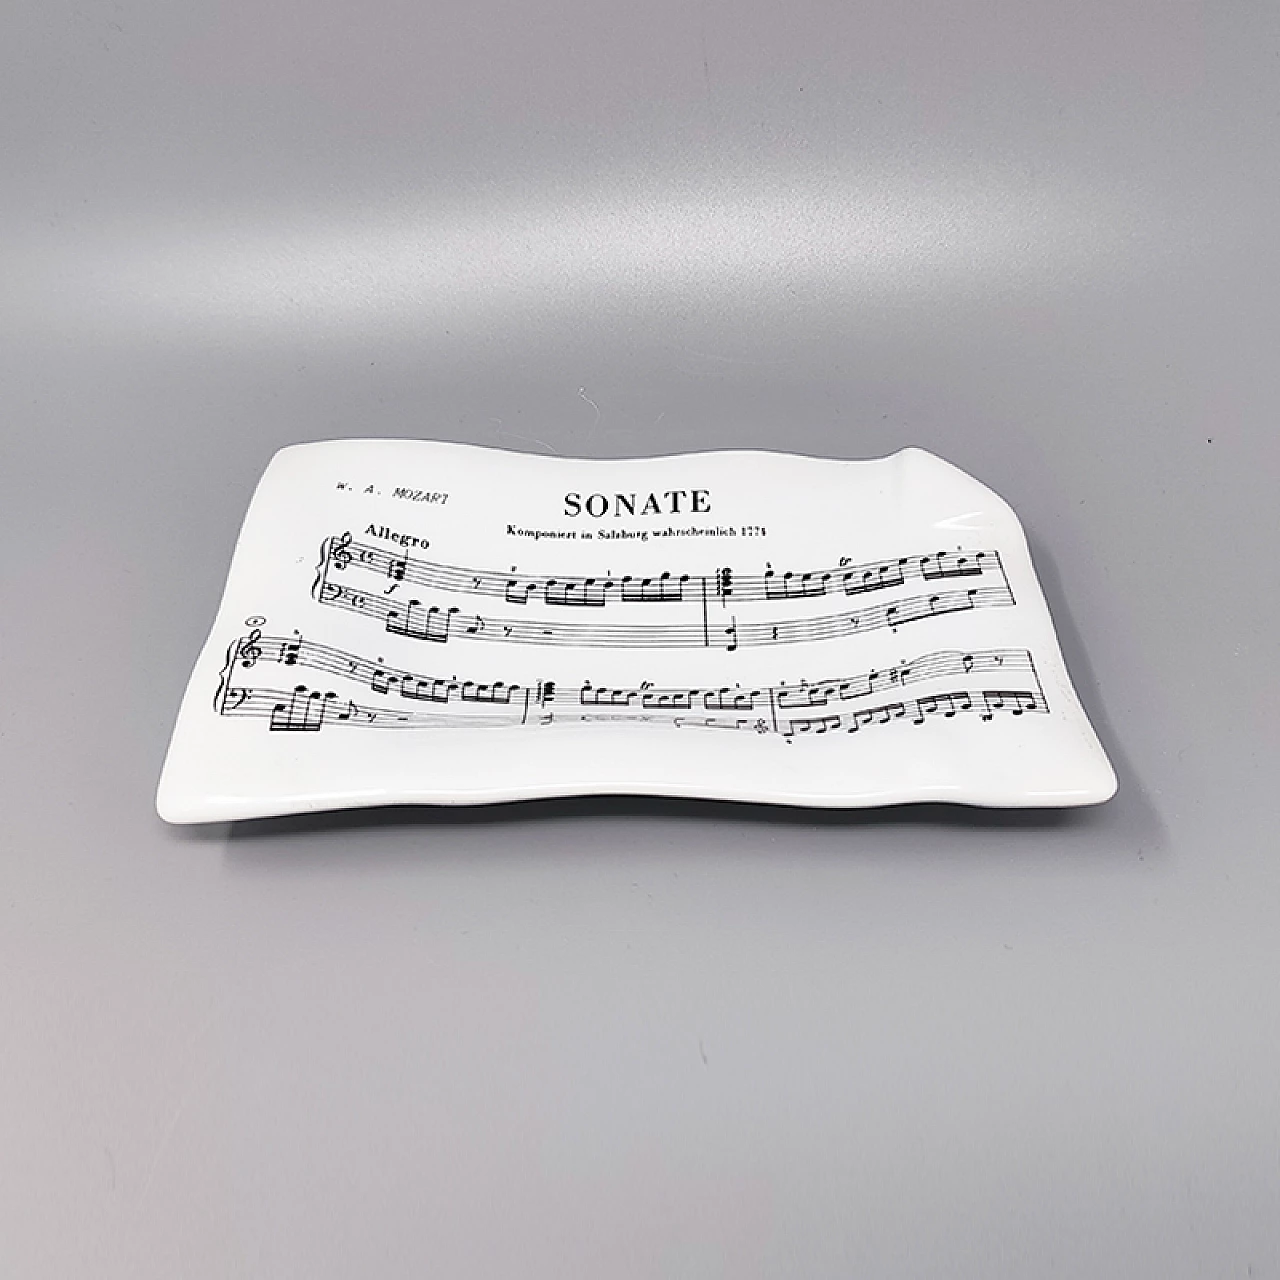 Vide poche Sonate- Mozart by Piero Fornasetti, 1950s 3